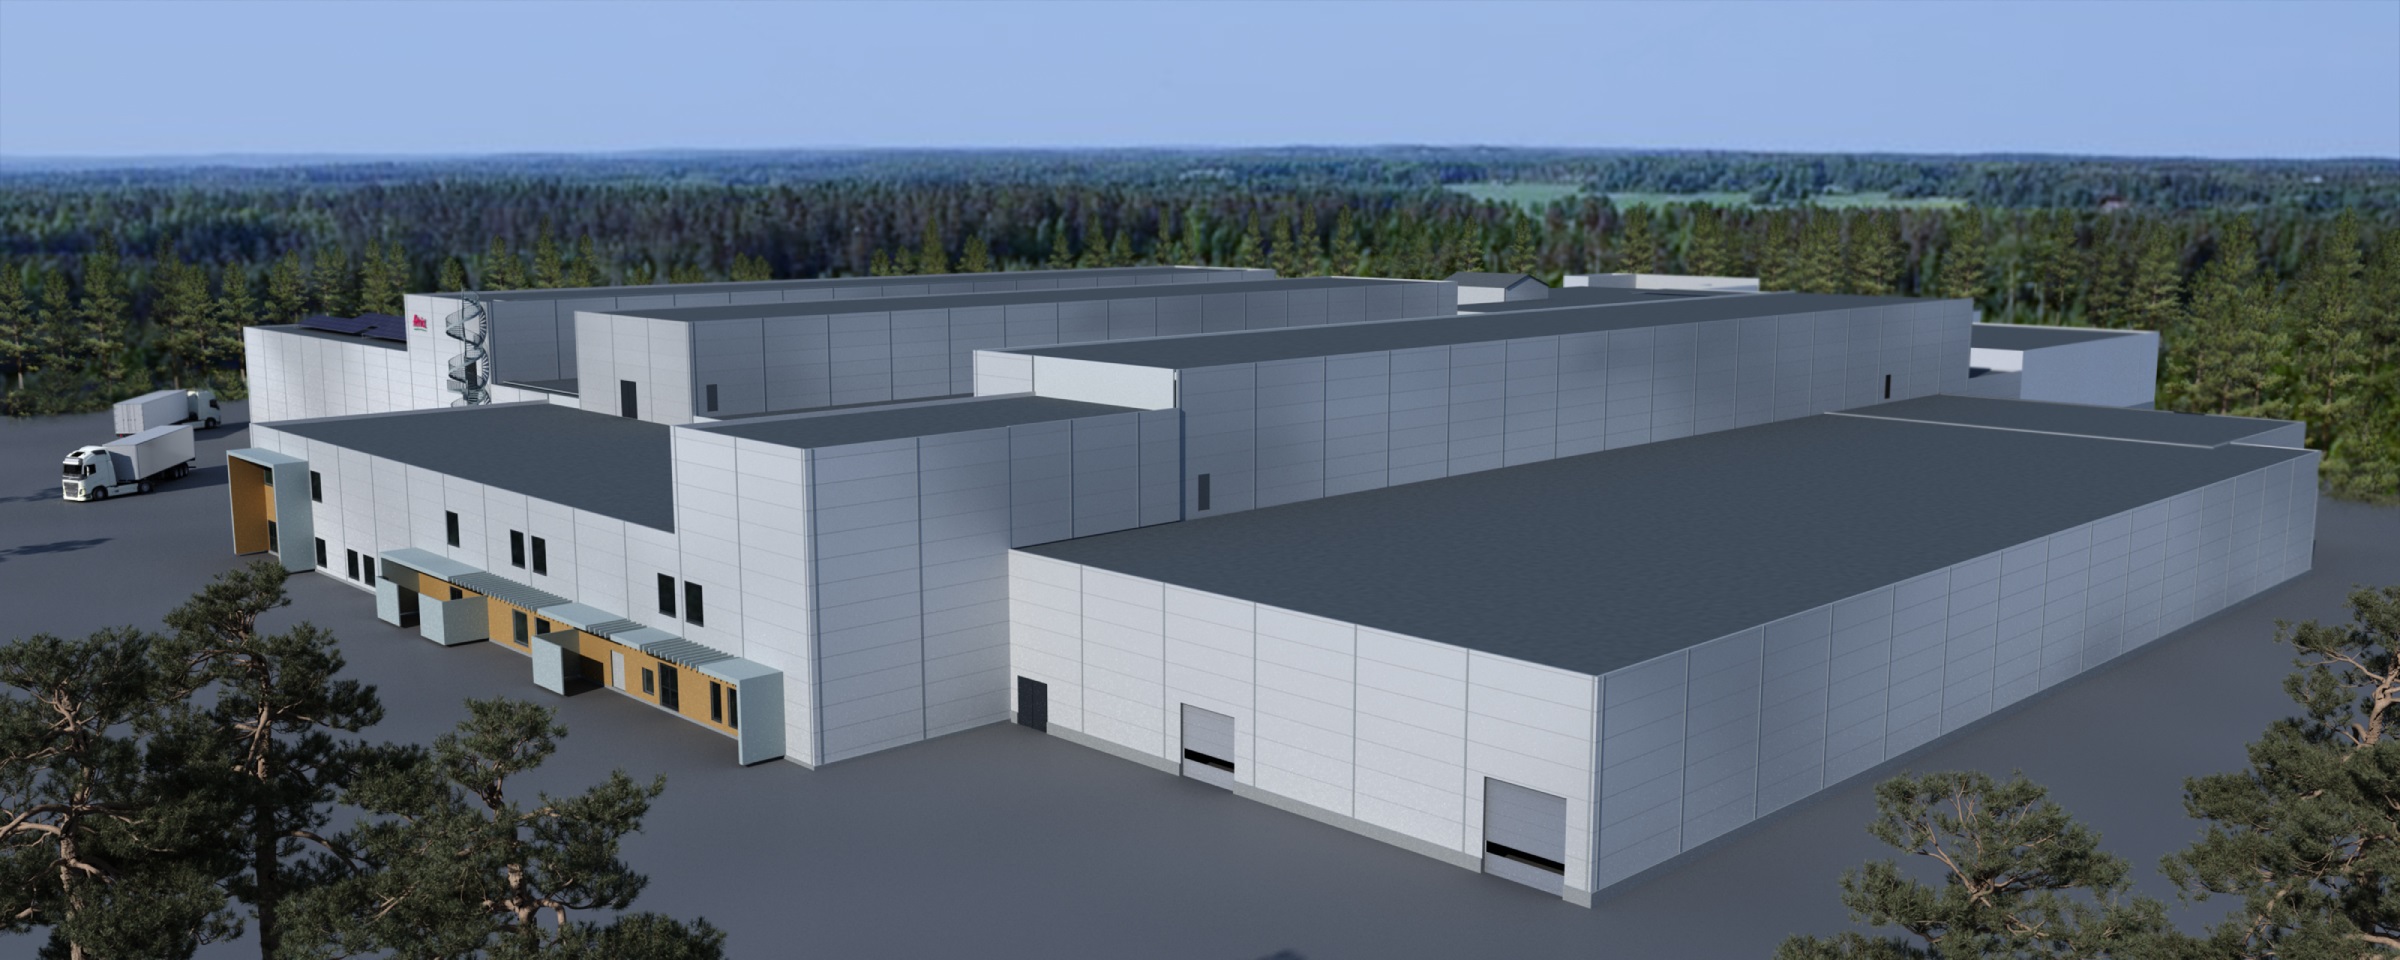 Neues Atria-Werk in Finnland mit 15.000 bph